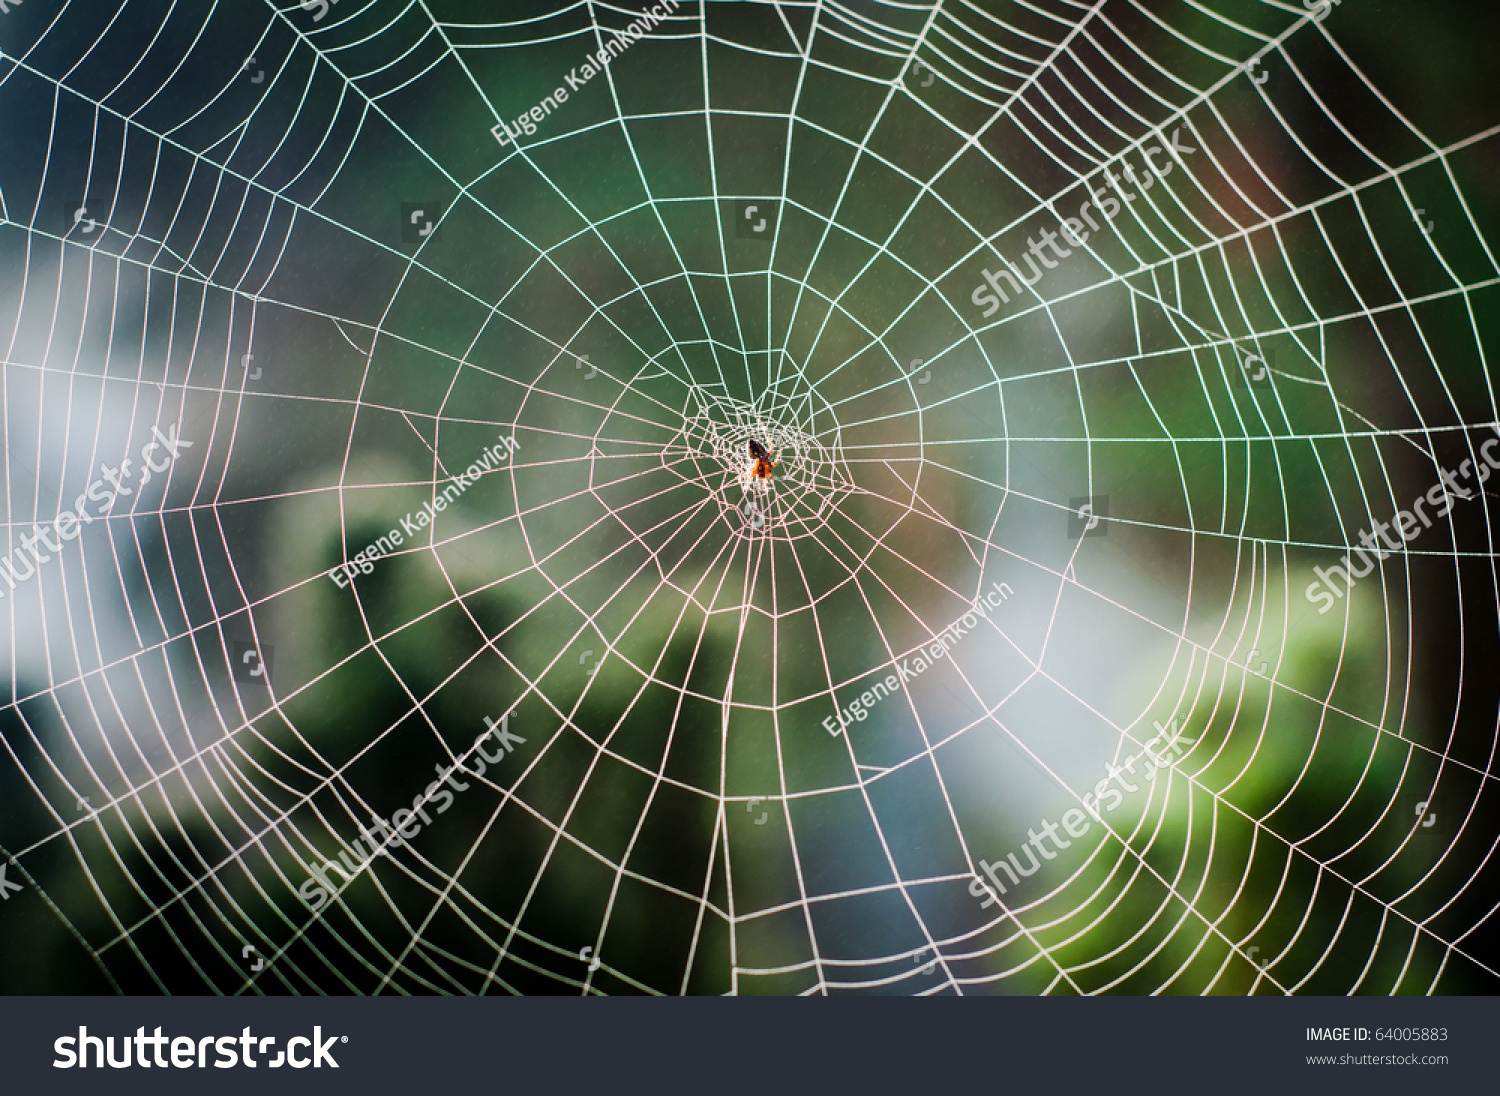 Паук сплел паутину как показано на рисунке. Спираль Фибоначчи паутина. Паутина логарифмическая спираль. Паутина паука спираль. Паутина паука эпейра.